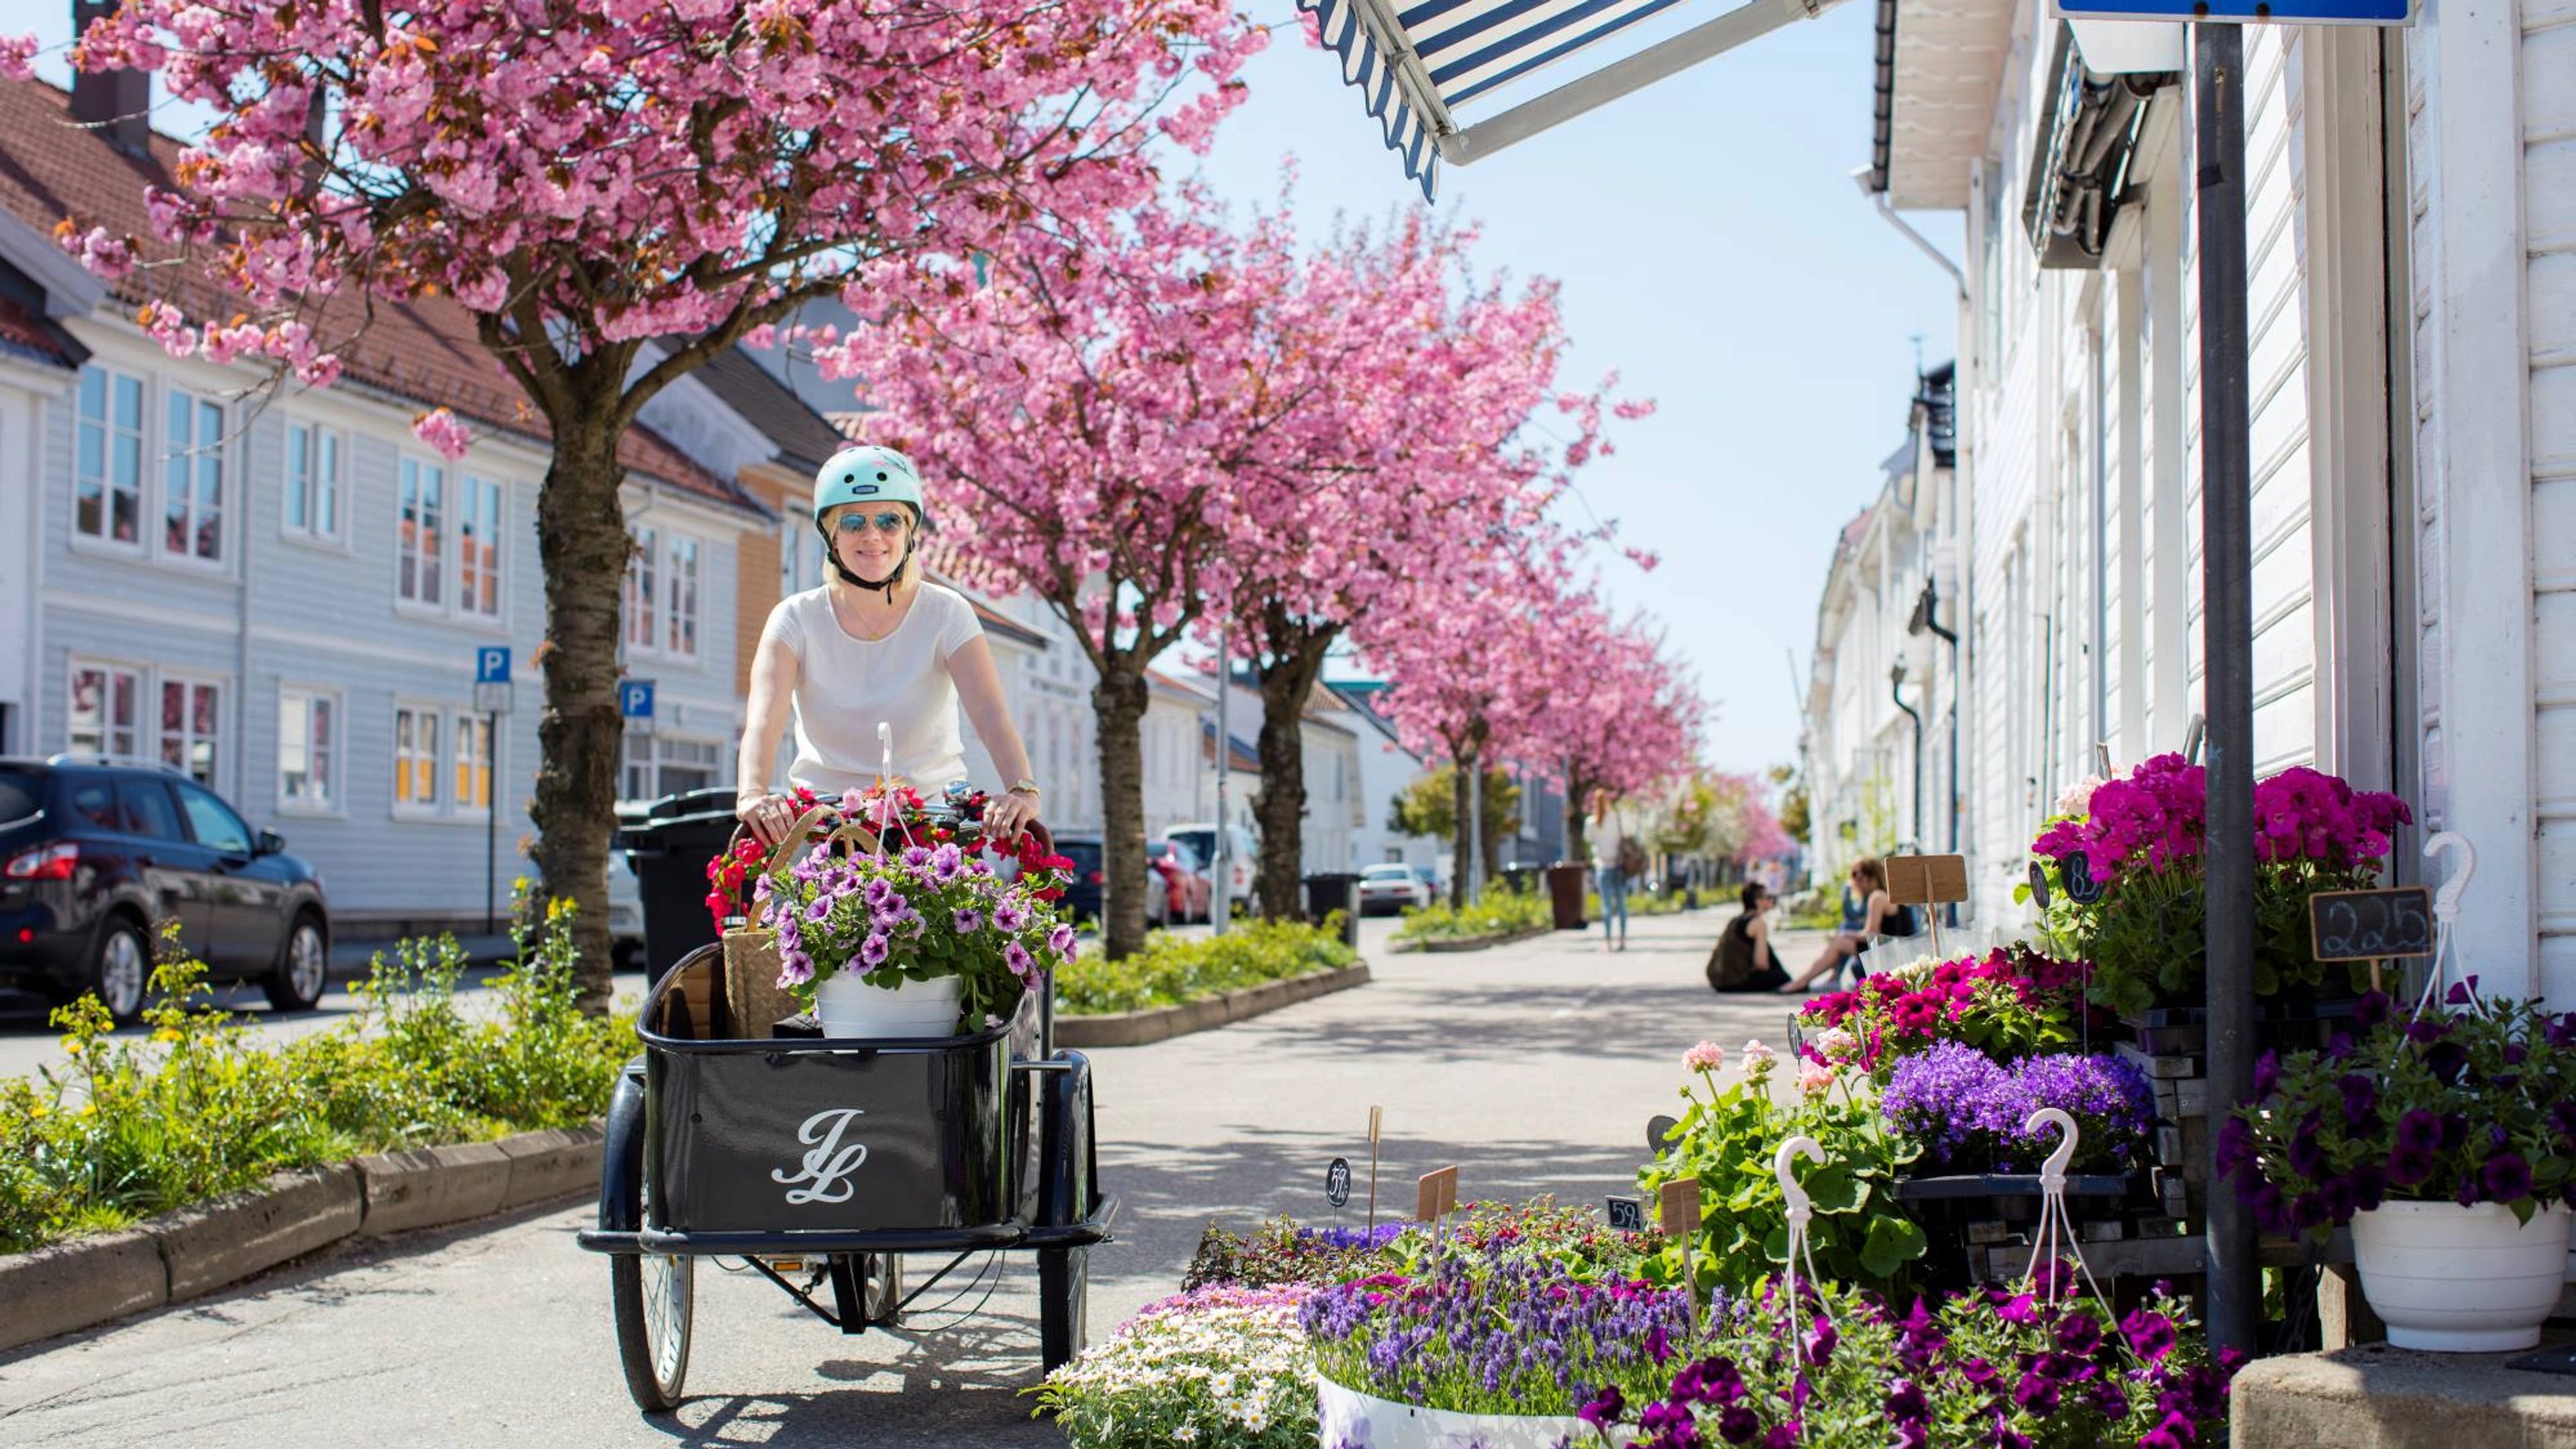 På sykkel gjennom Posebyen i Kristiansand